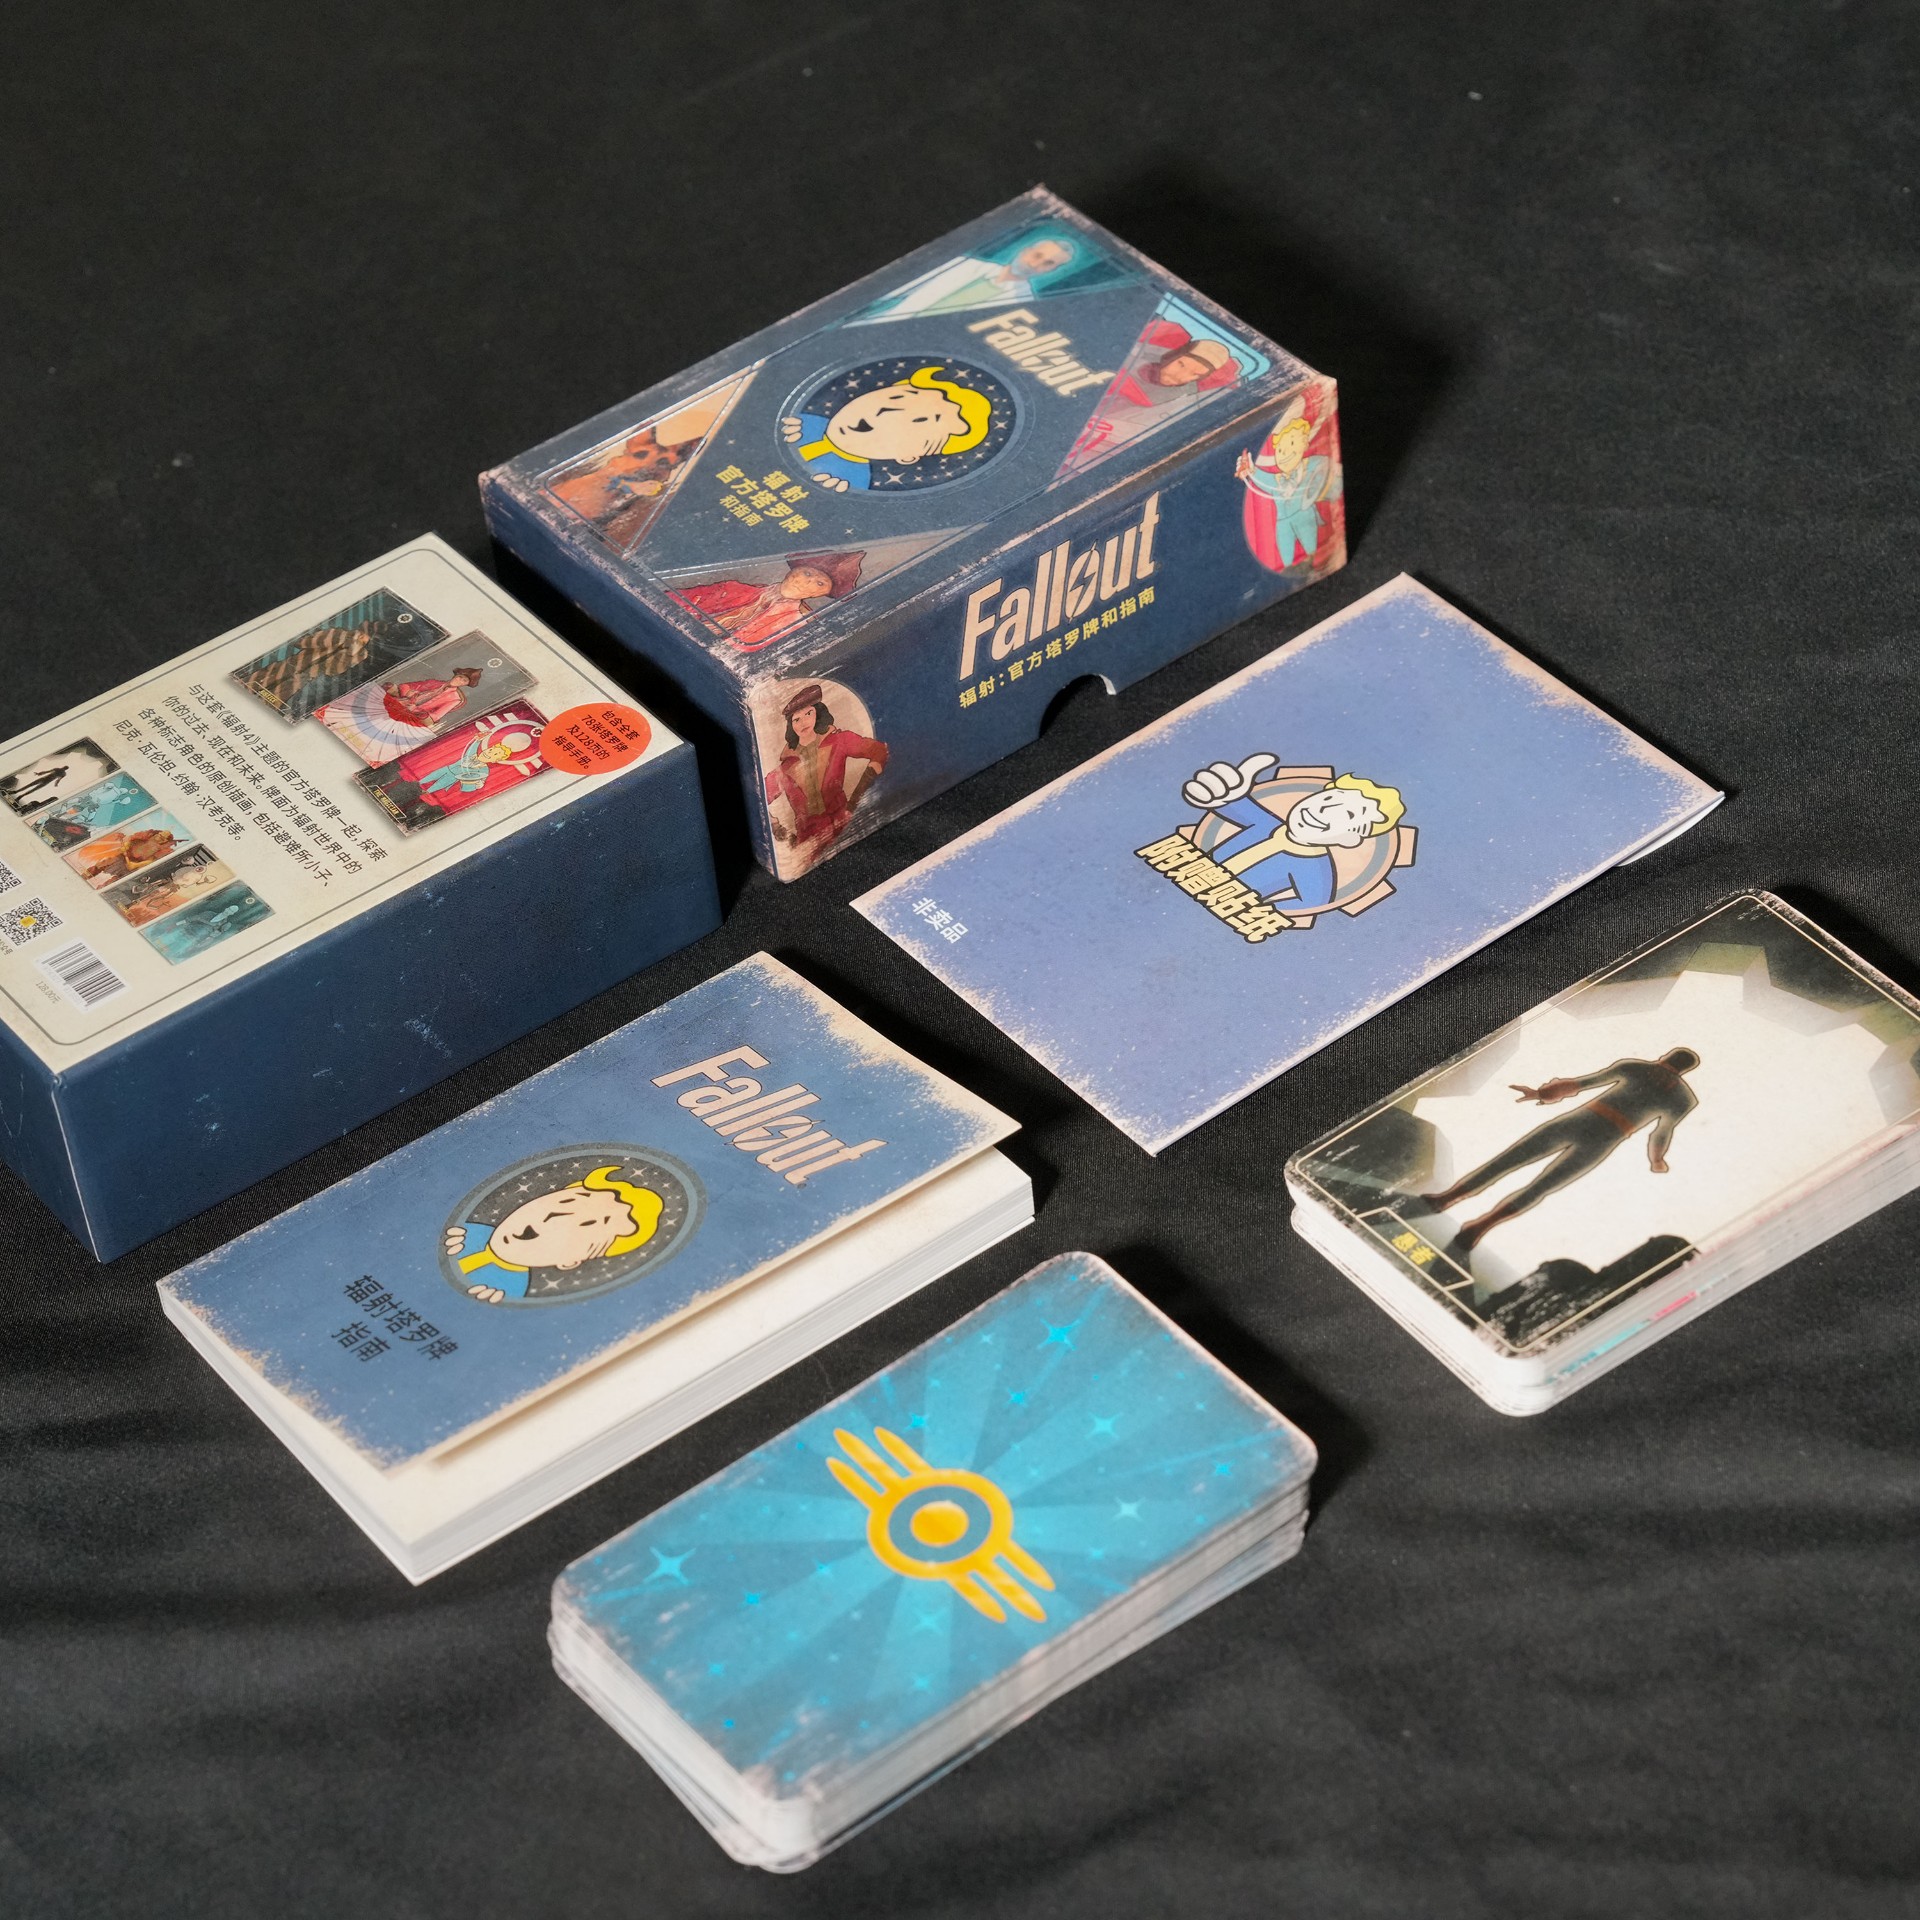 辐射官方塔罗牌和指南 辐射官方卡牌 fallout正版授权周边